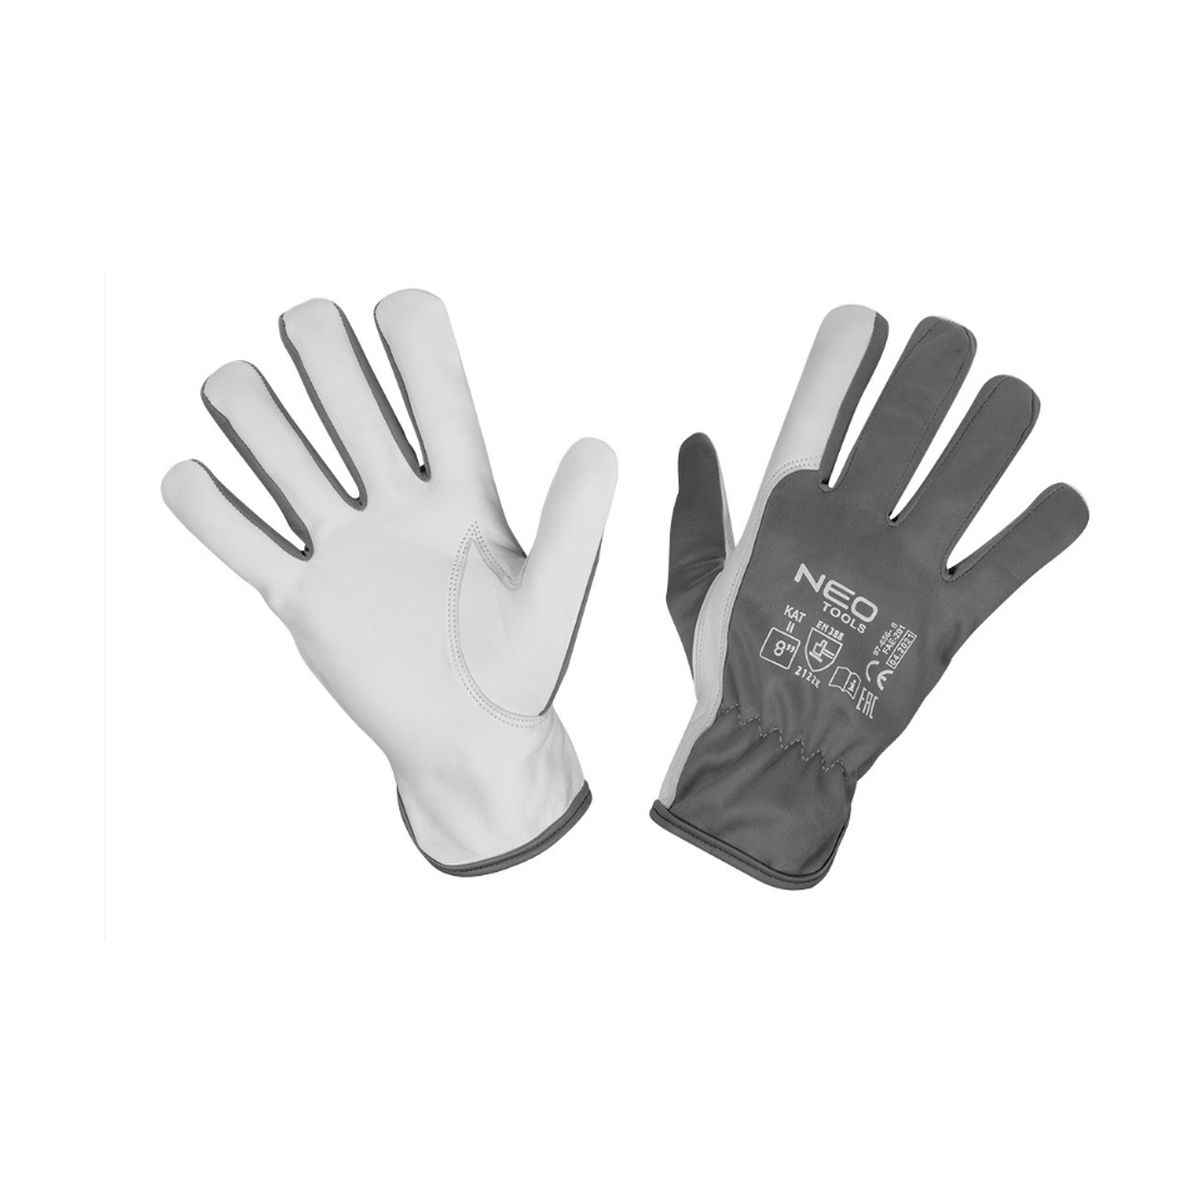 Γάντια εργασίας από δέρμα και πολυεστέρα 8/Μ 97-656-8 NEO TOOLS 